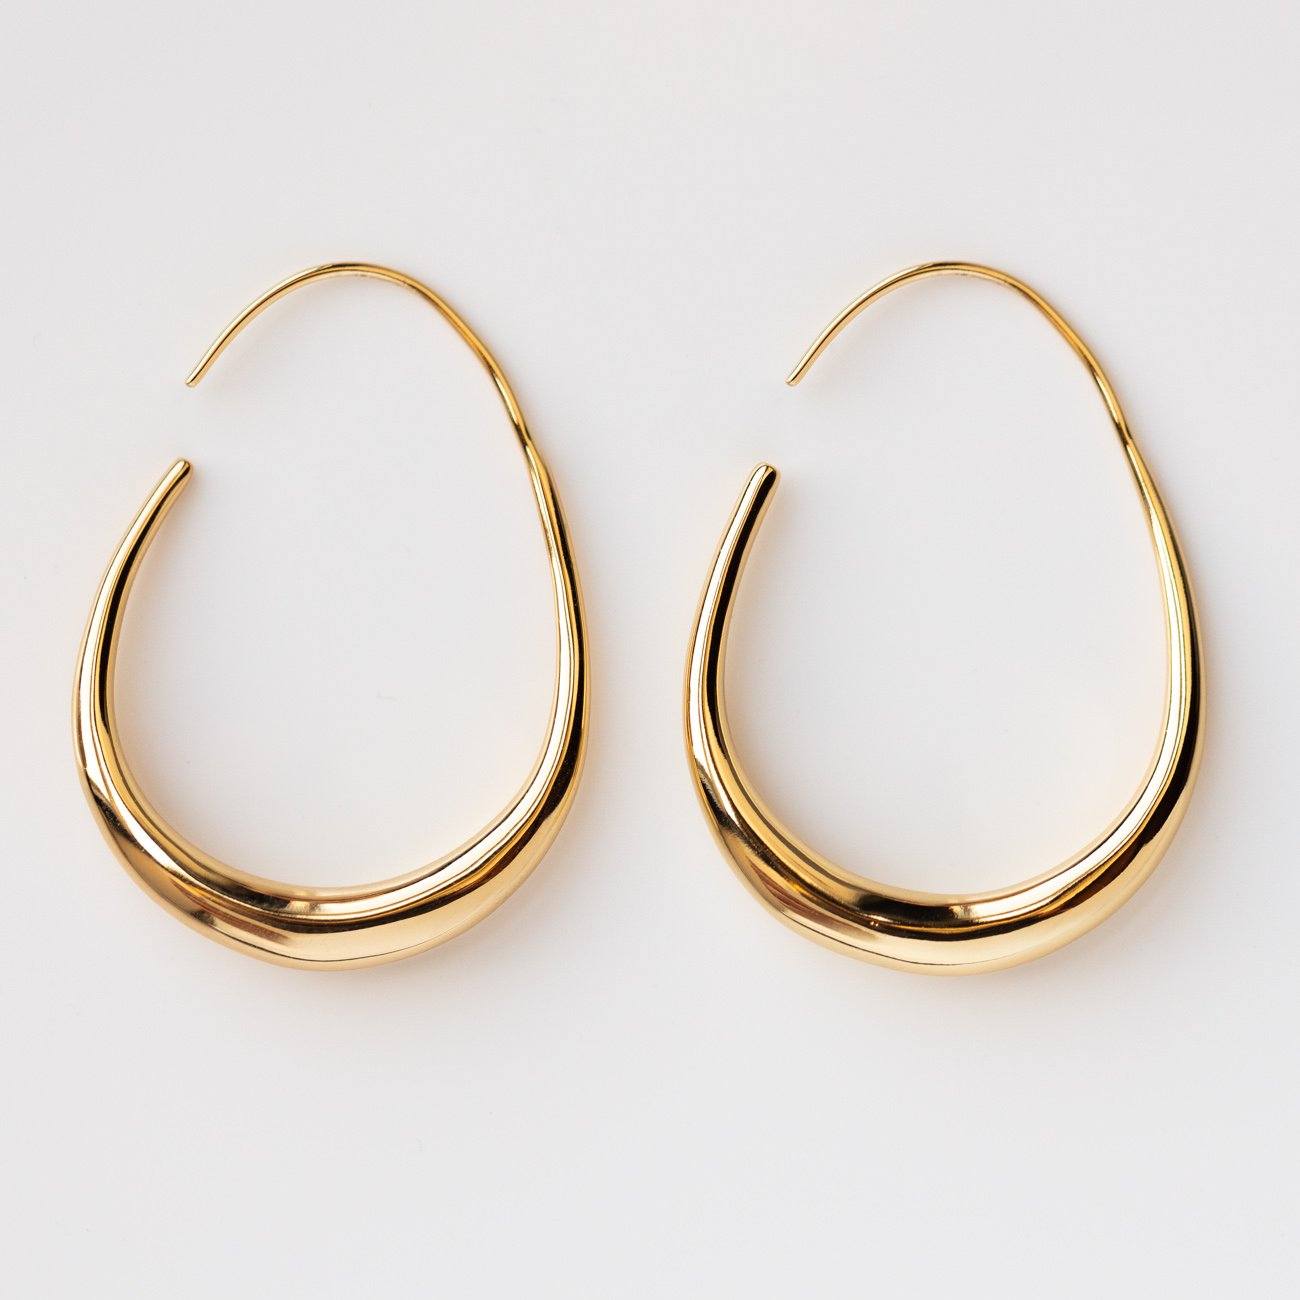 Fluid Hoop Earrings modern unique yellow gold dainty hoop earrings